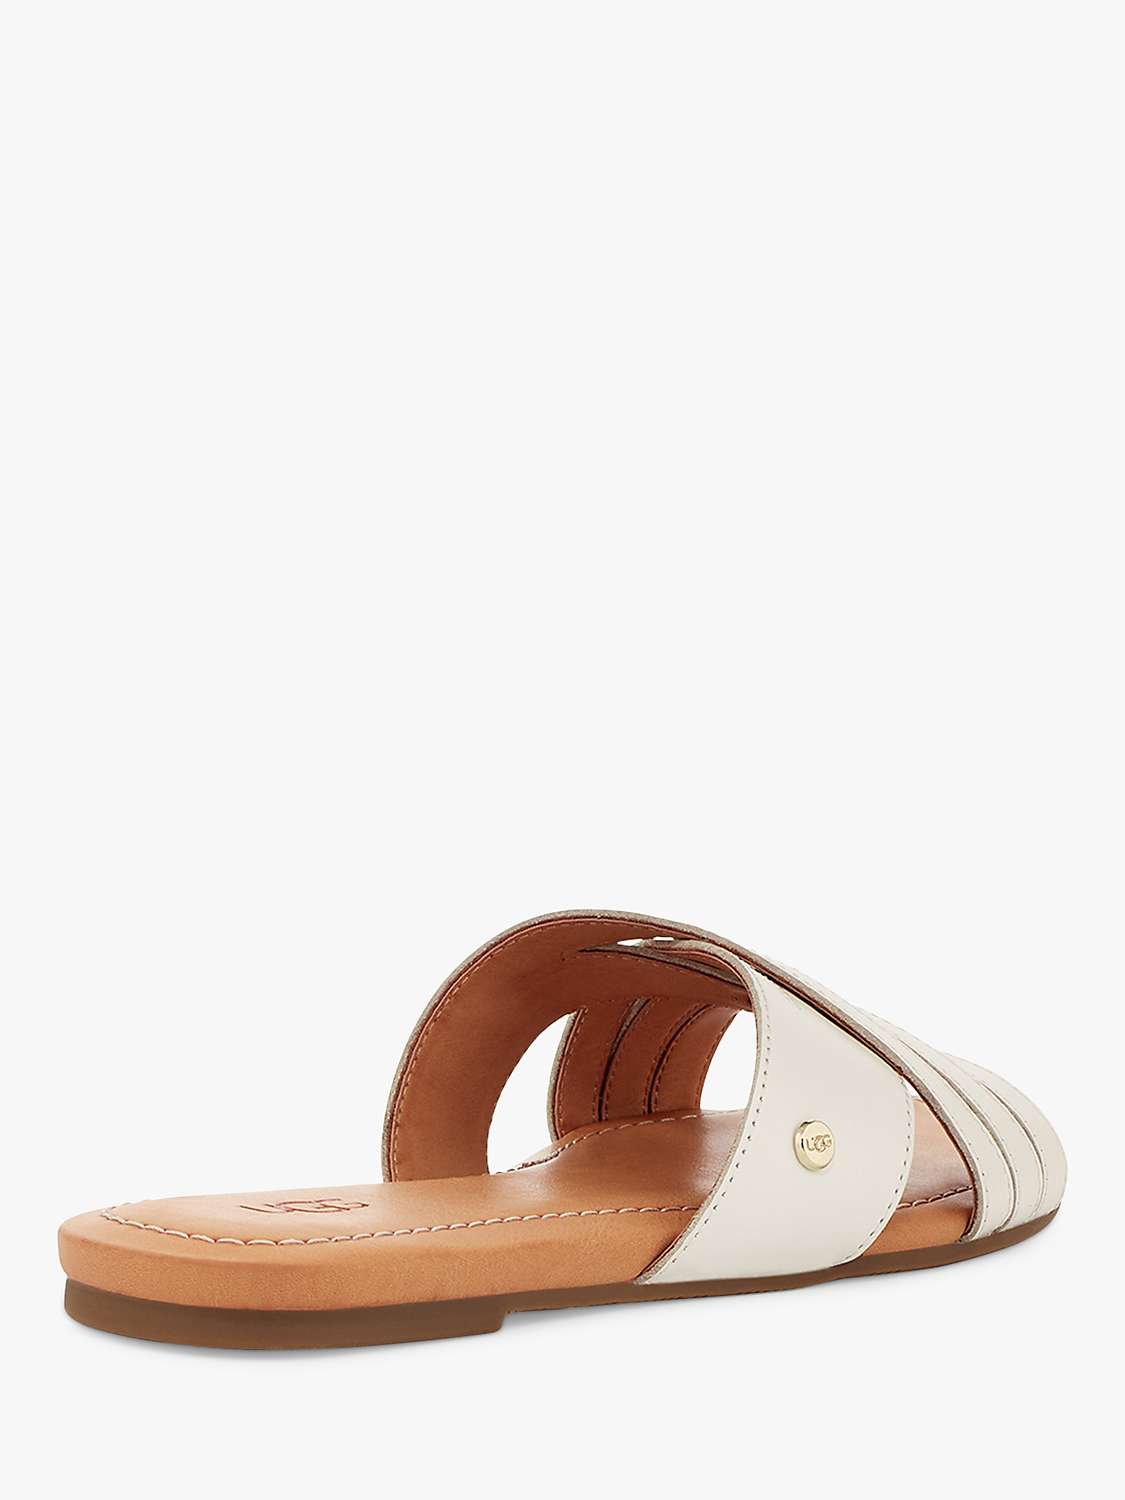 Buy UGG Kenleigh Slider Sandals Online at johnlewis.com